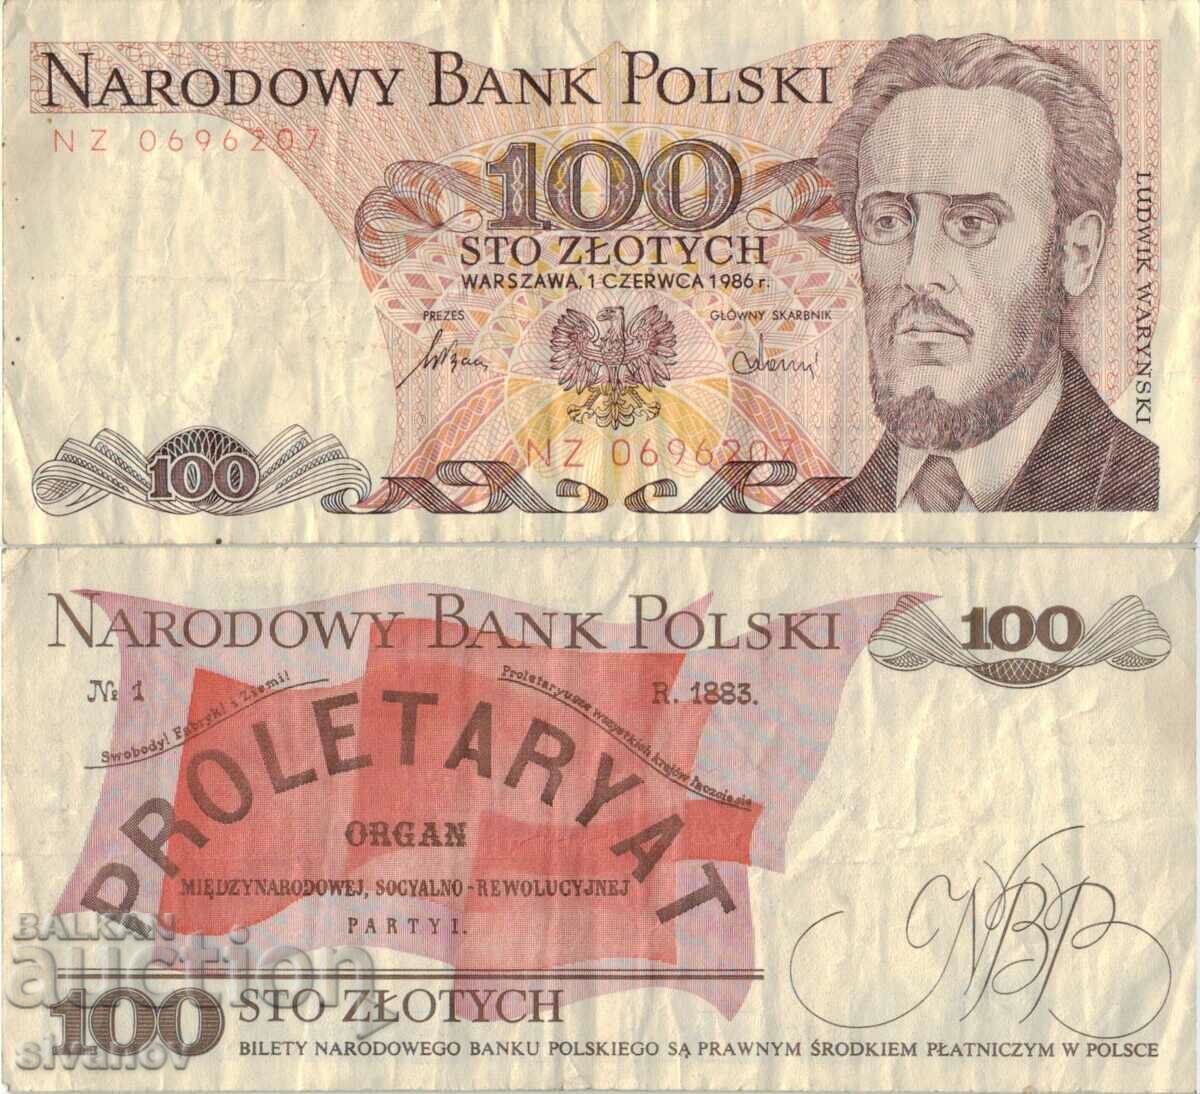 Poland 100 zloty 1986 banknote #5304